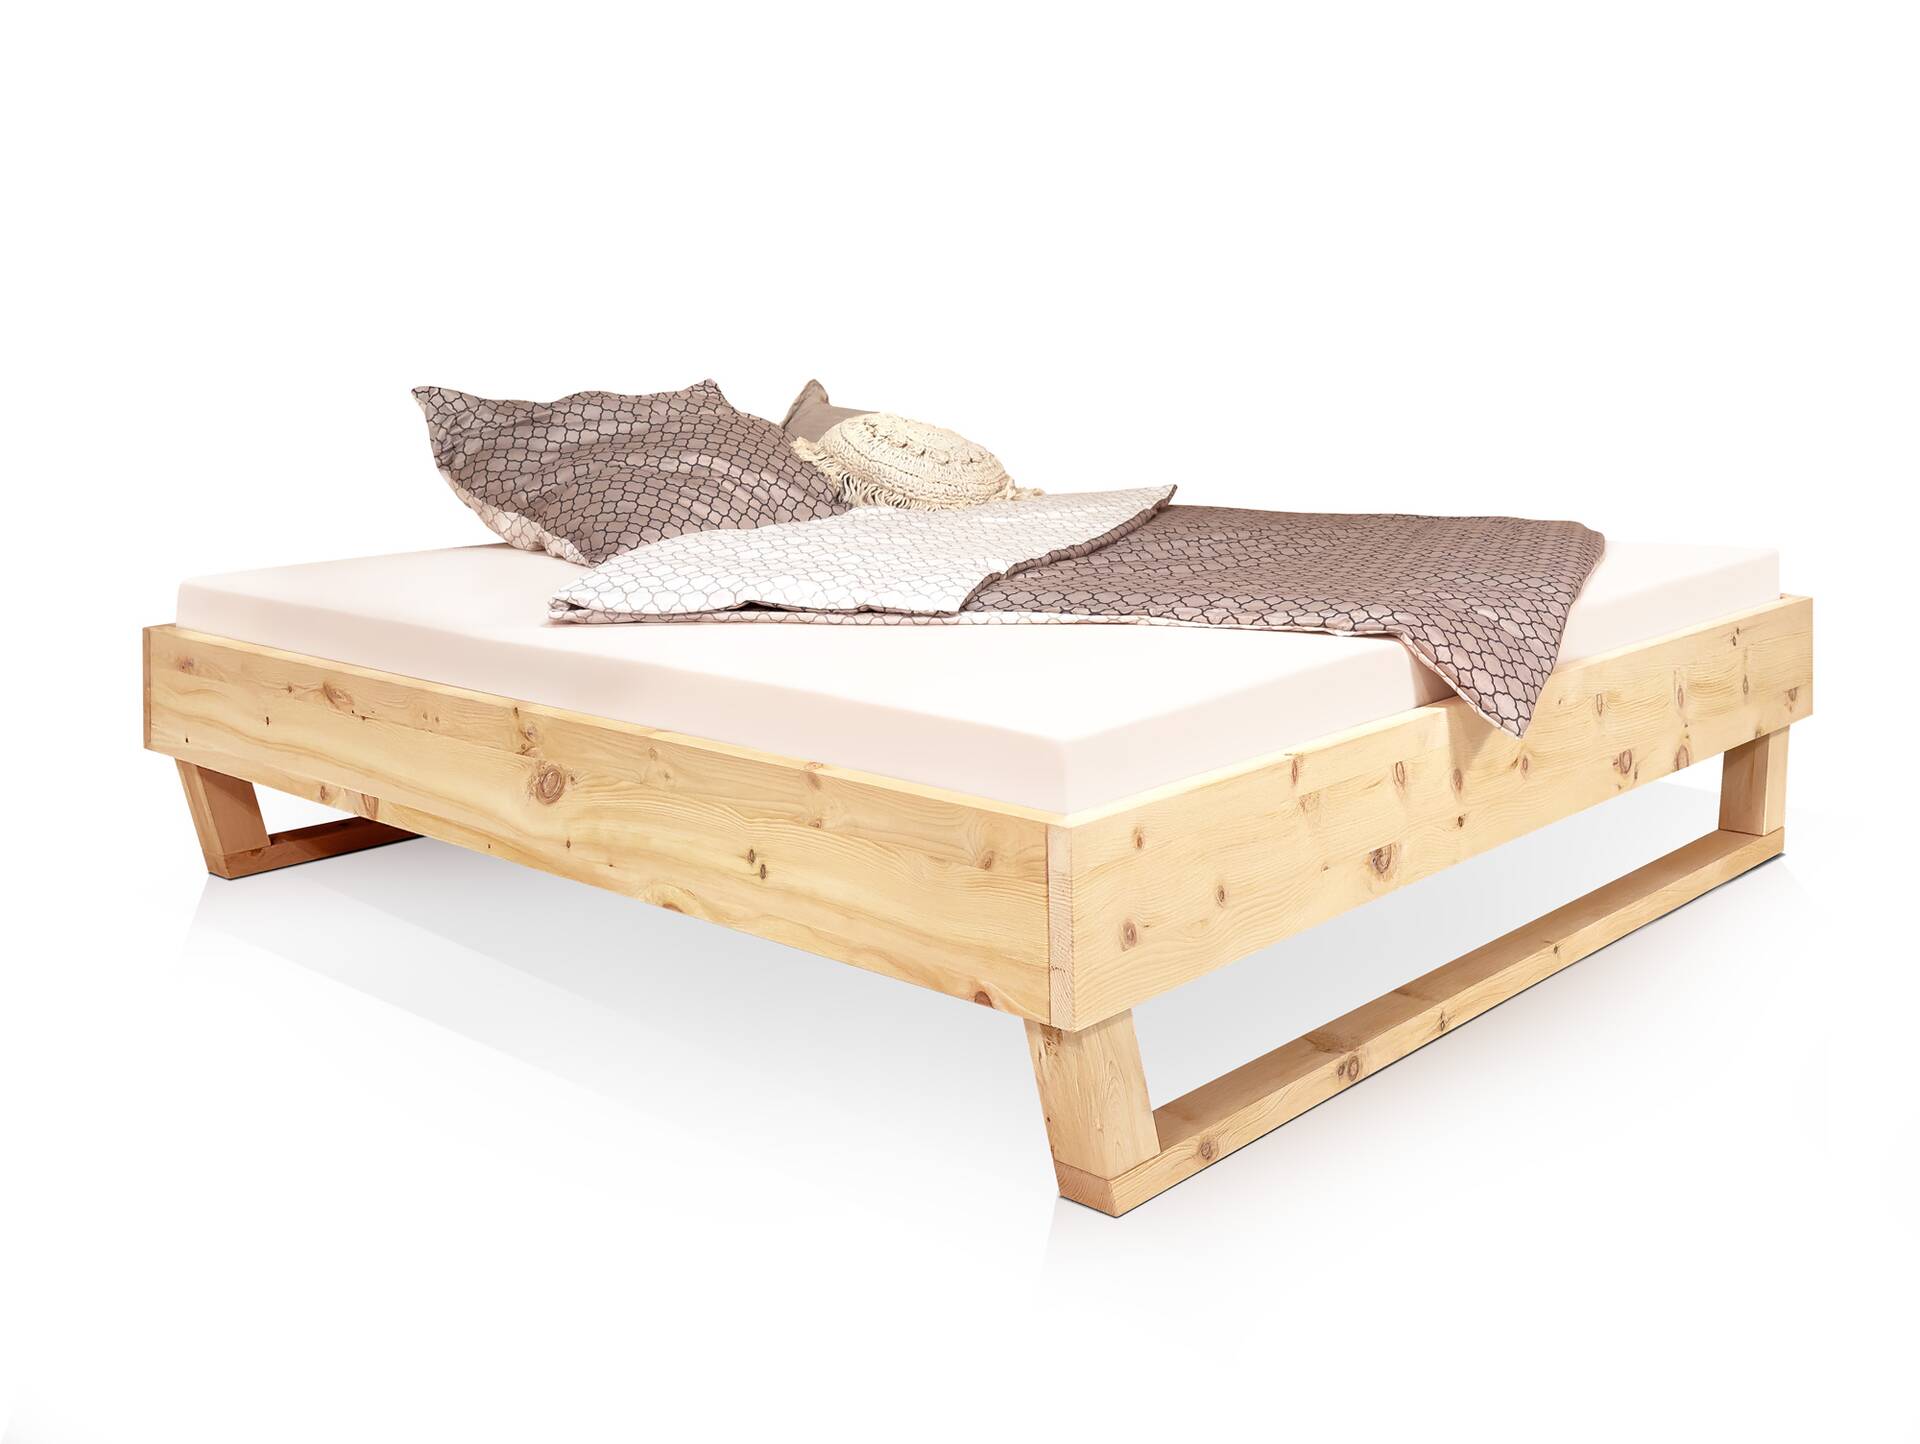 ZABINO Holz-Kufenbett aus Zirbe, Material Massivholz, mit/ohne Kopfteil 180 x 220 cm | Zirbe geölt | ohne Kopfteil